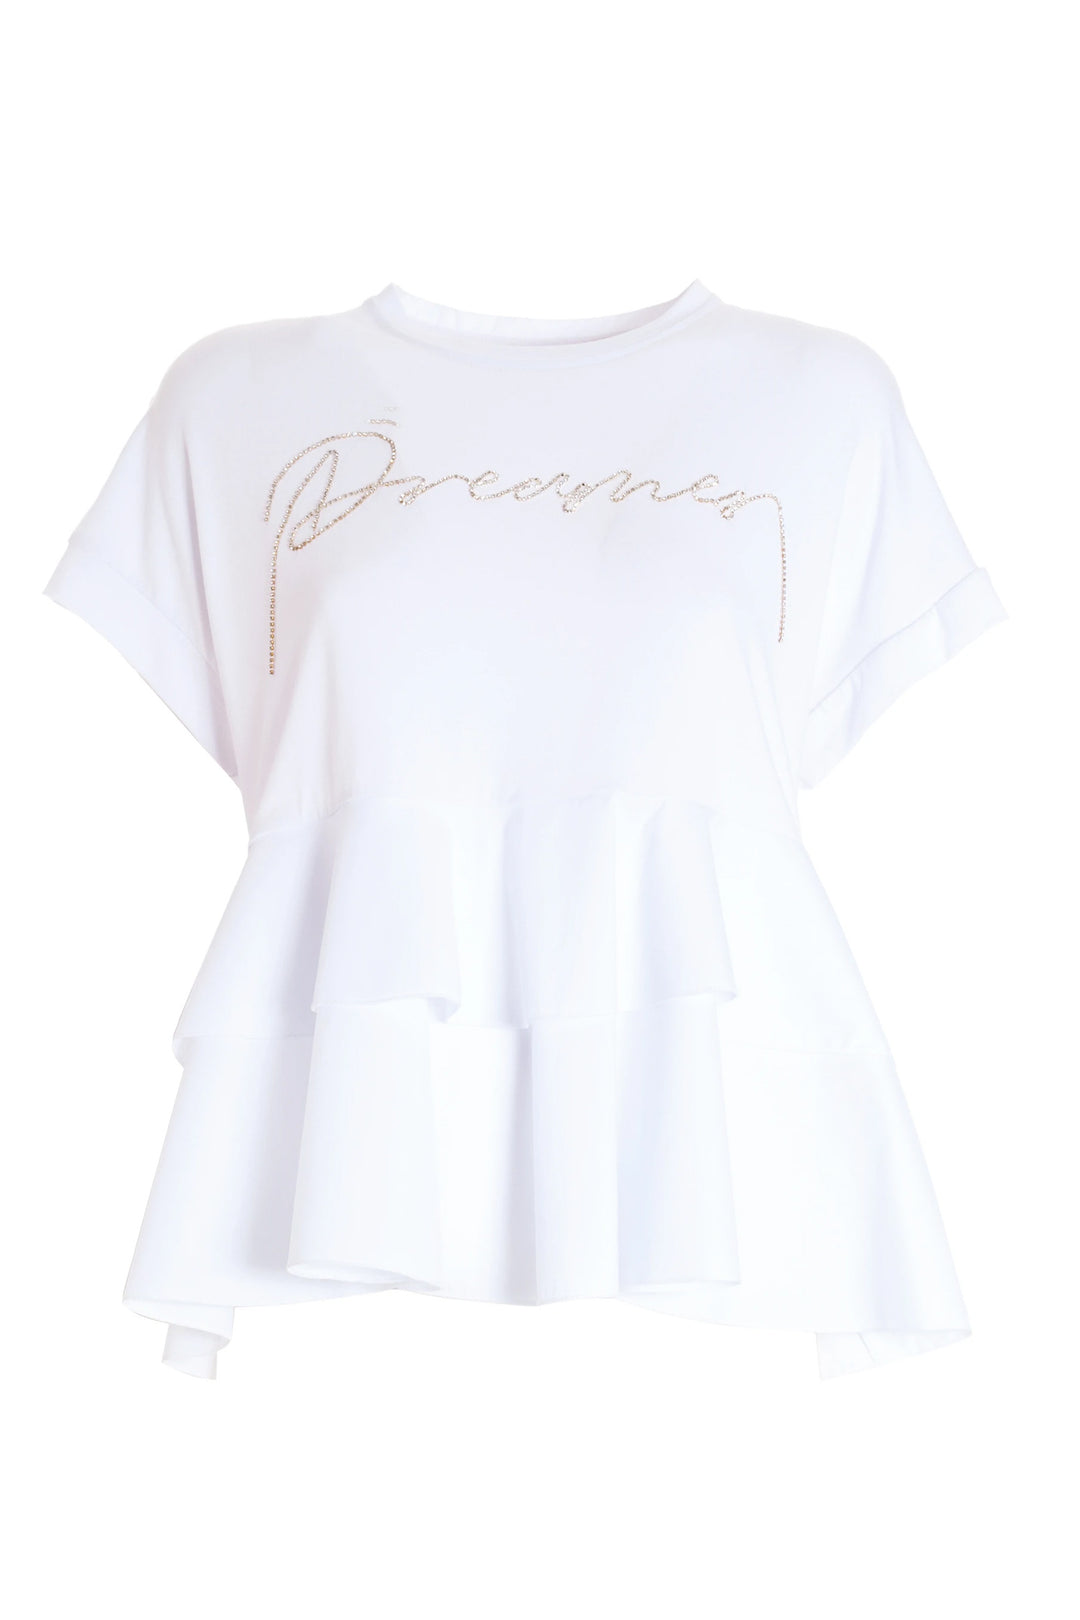 FRACOMINA T-shirt svasata bianca in jersey - Mancinelli 1954